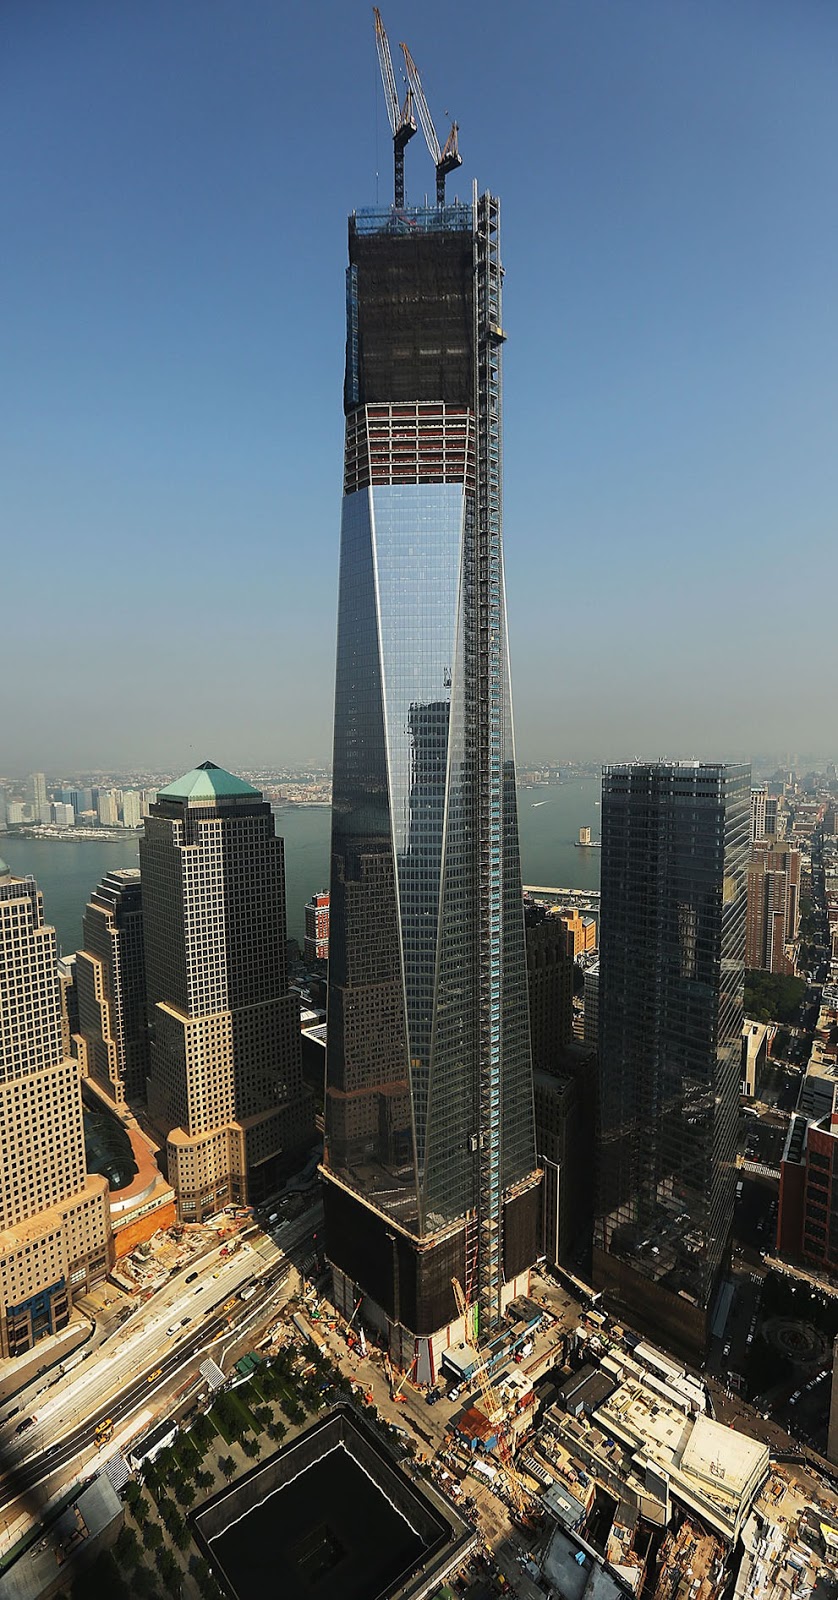 9/11 Memorial Museum World Trade Center